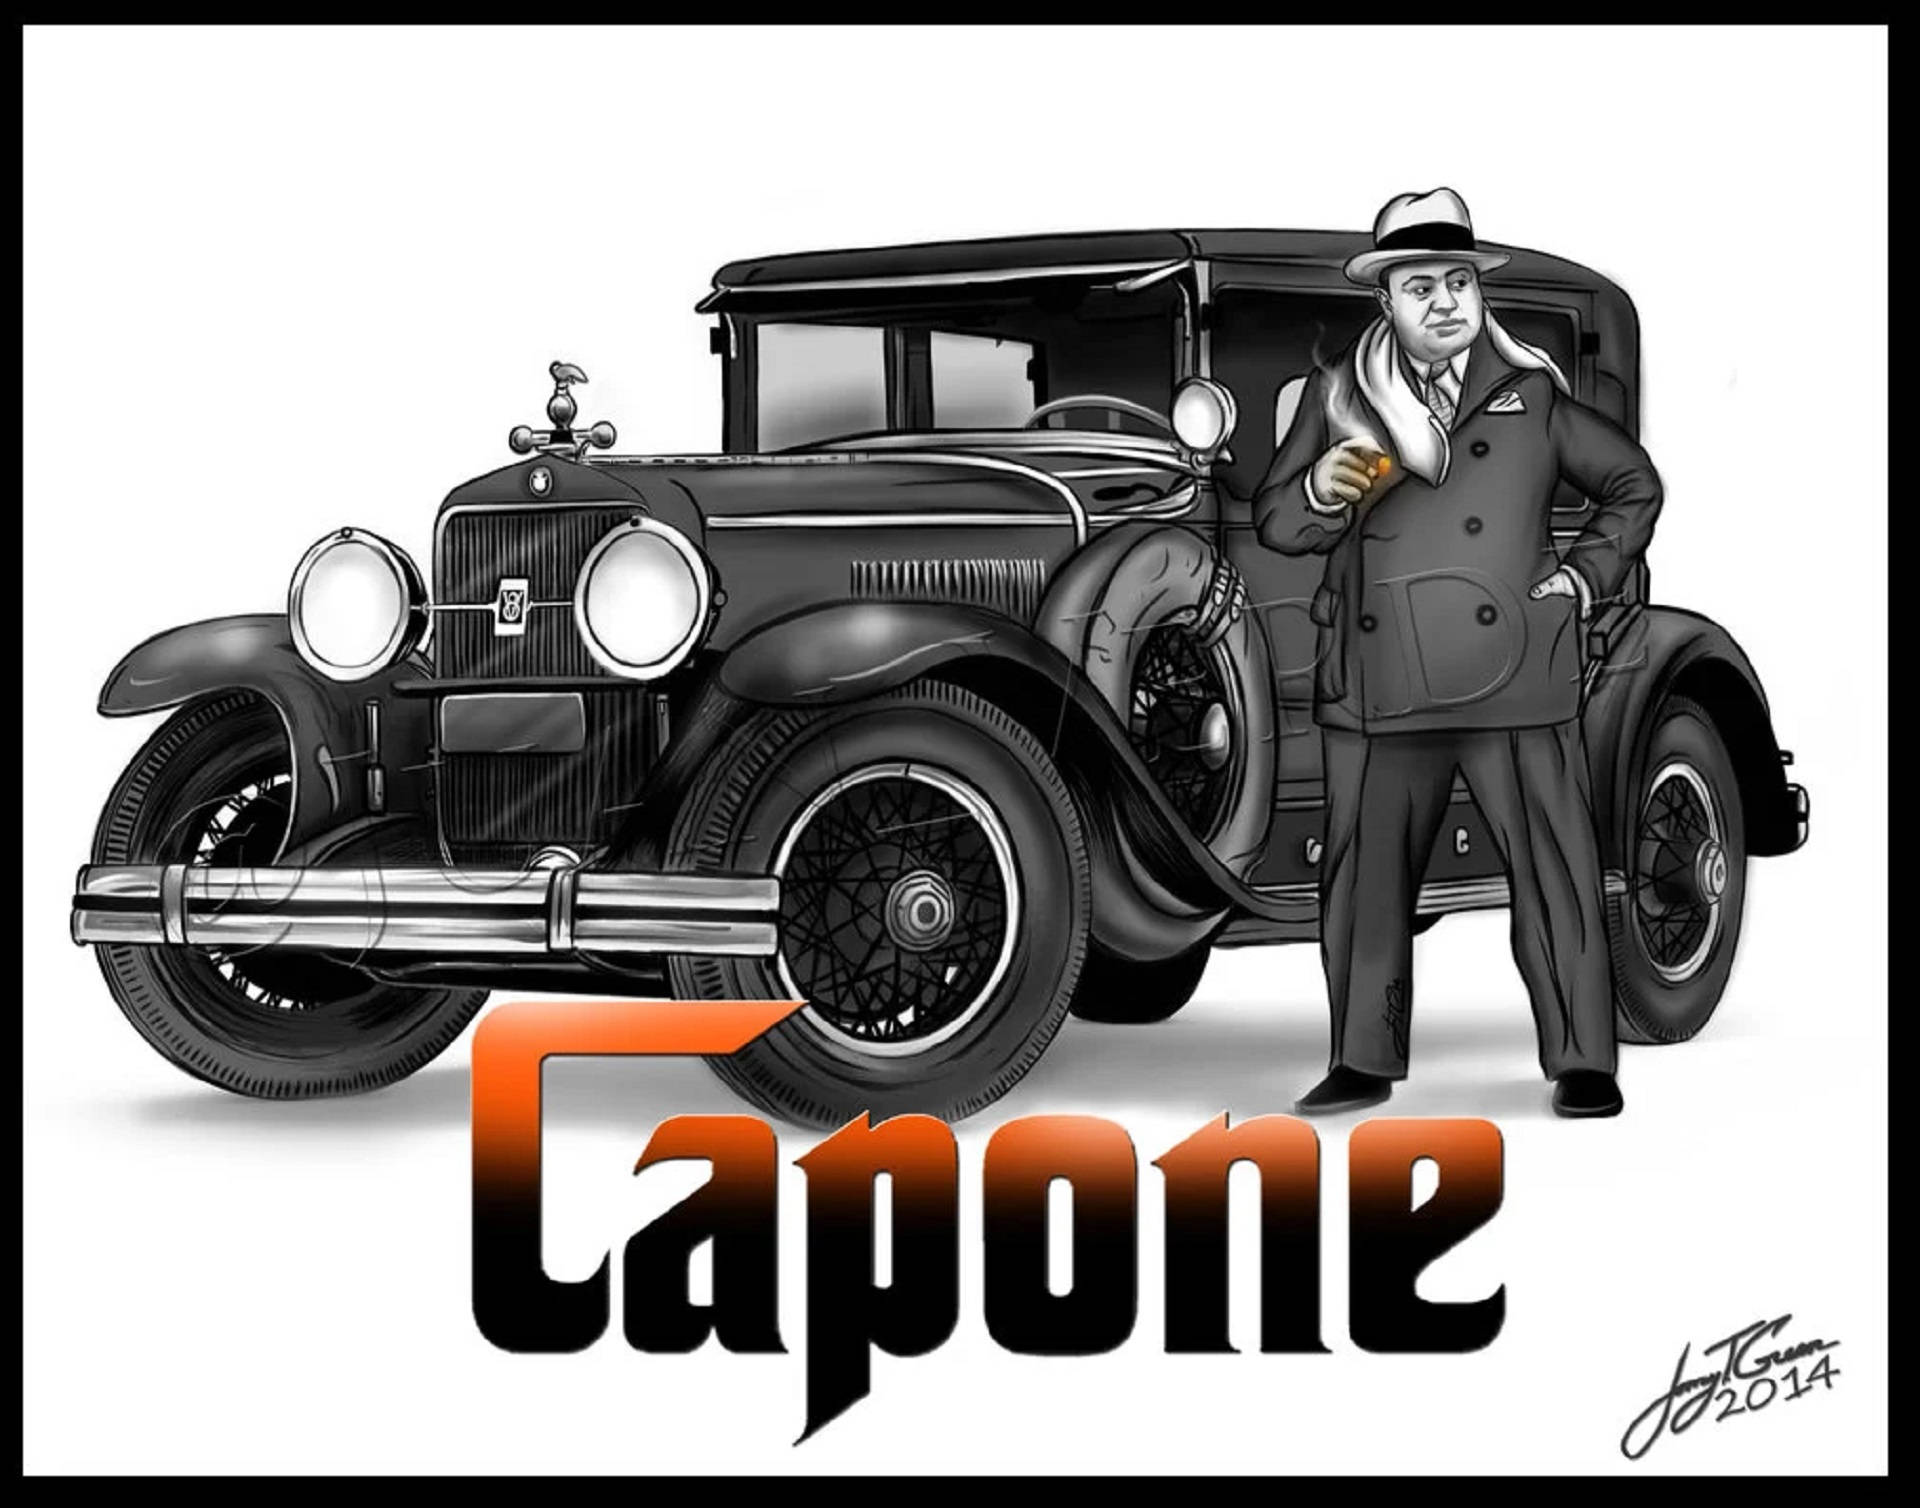 Al Capone With A Vintage Car Wallpaper